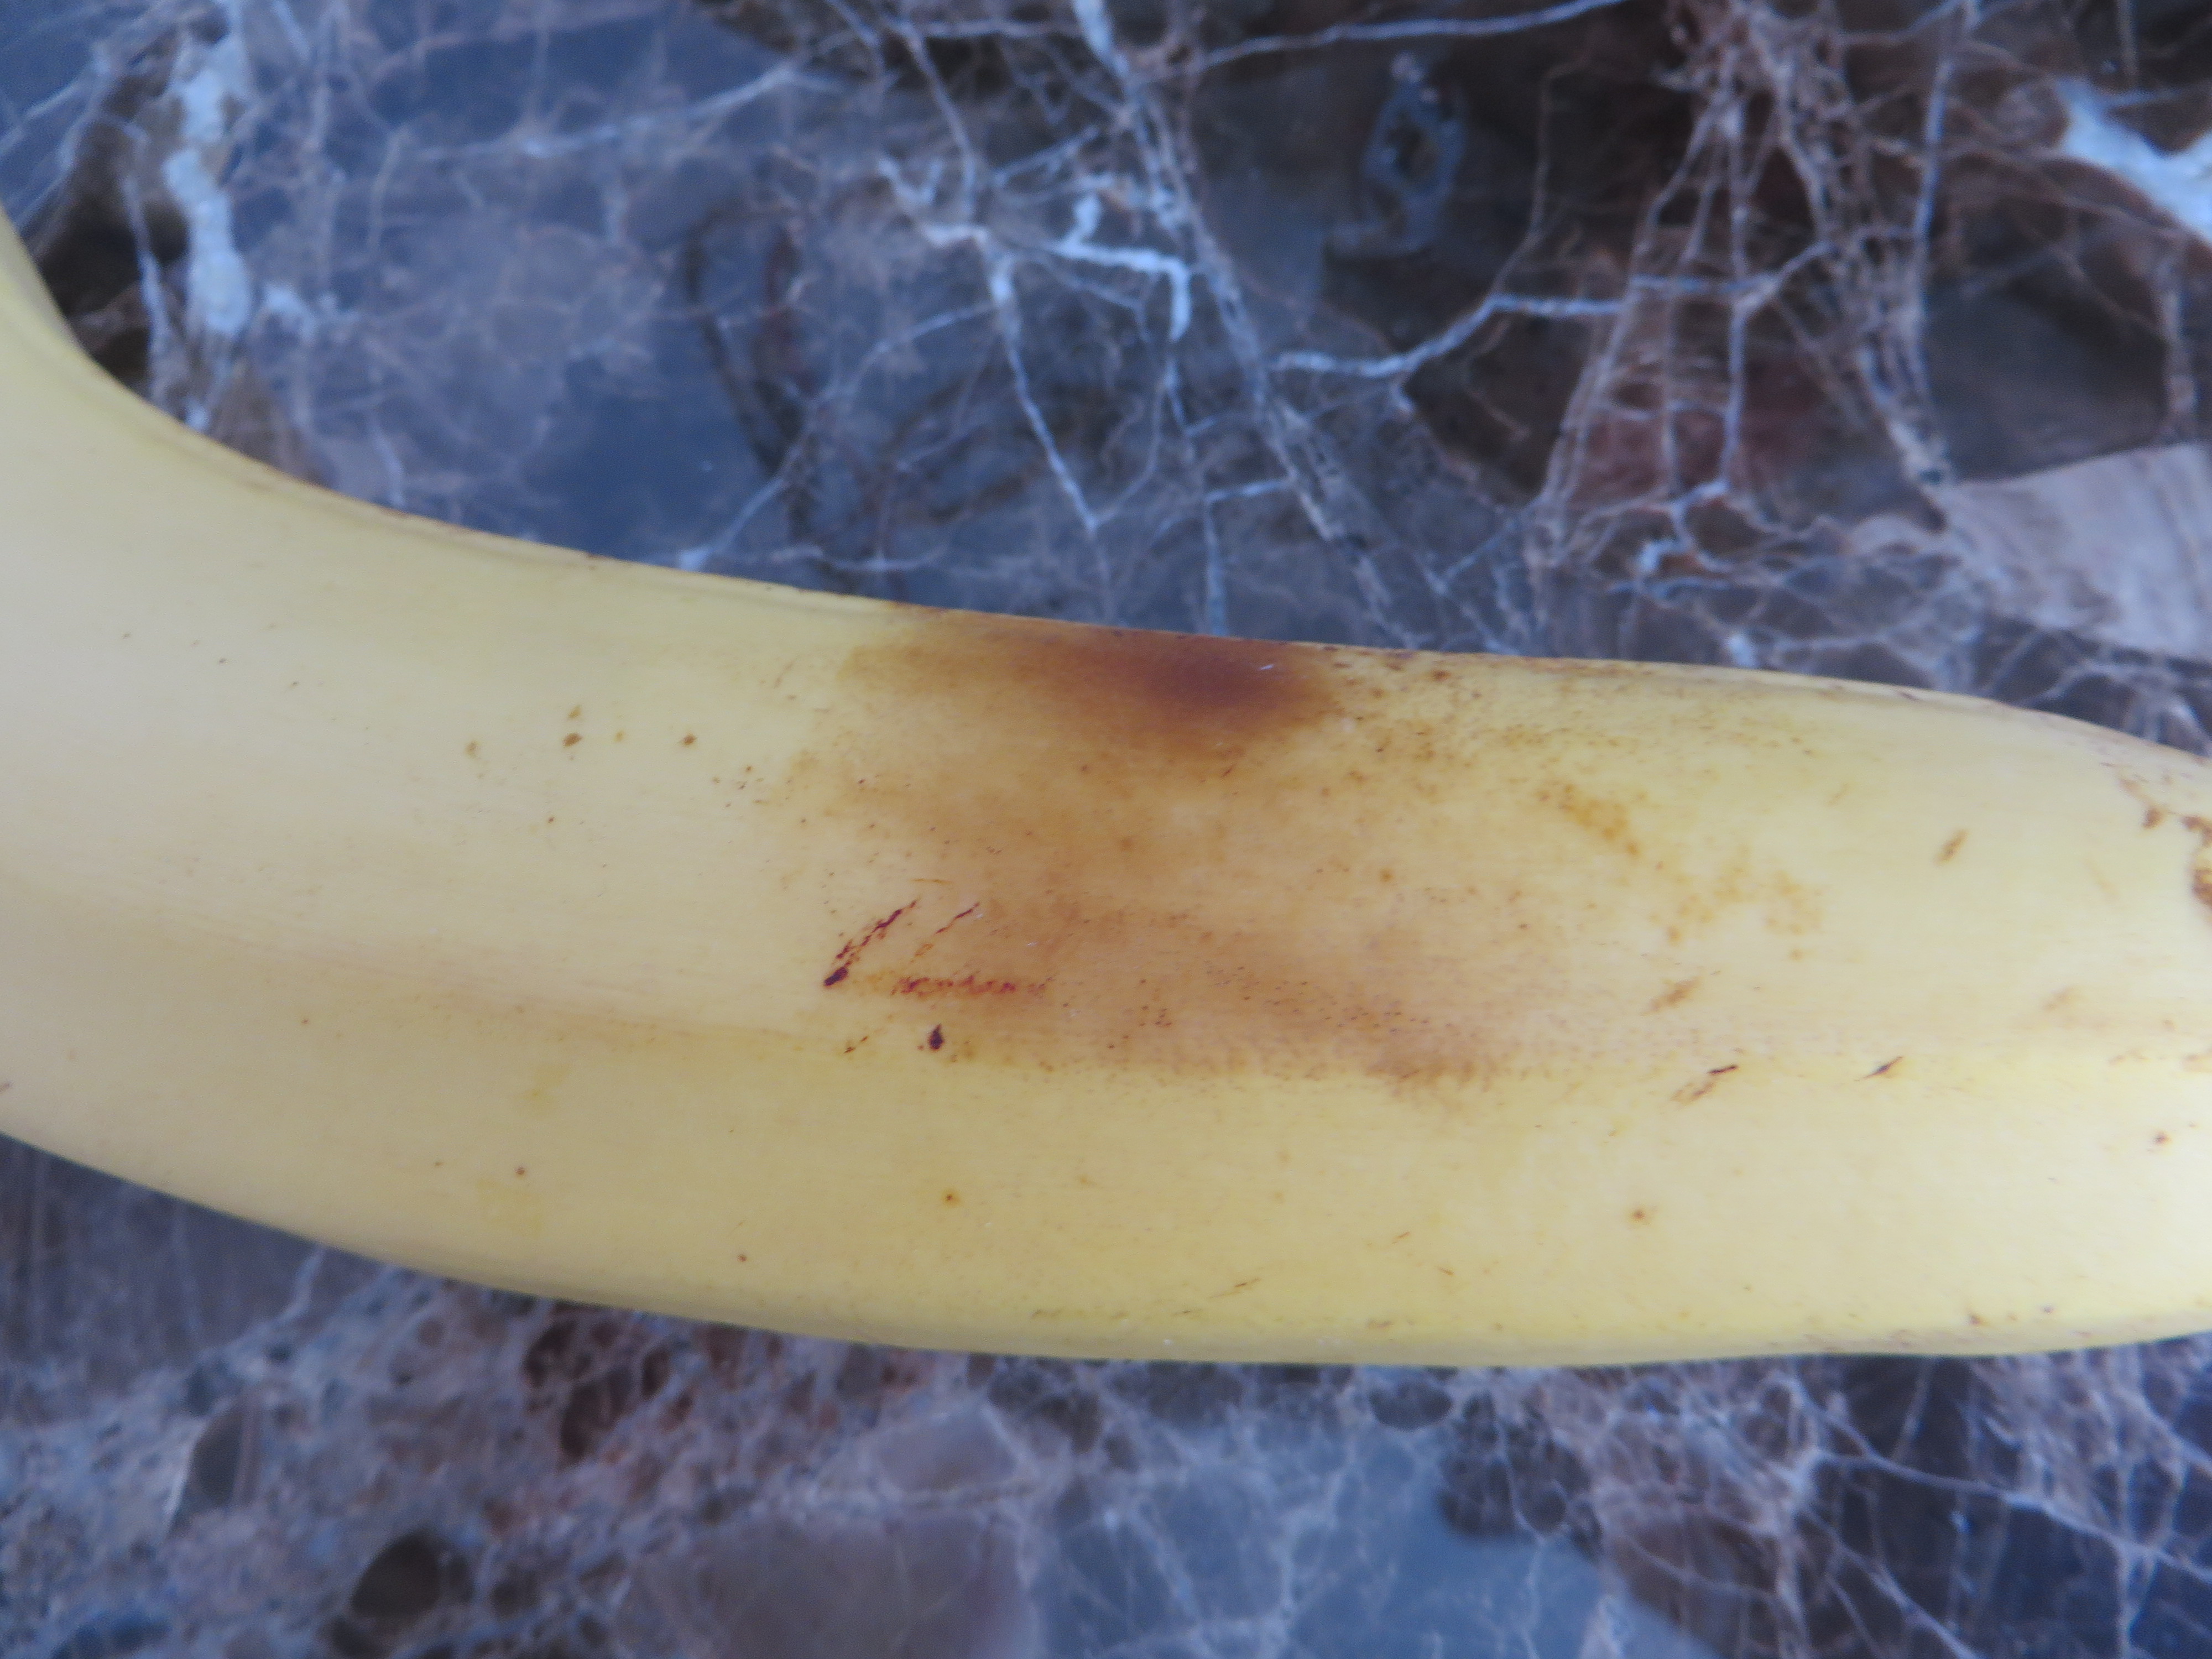 UVC irradiated banana